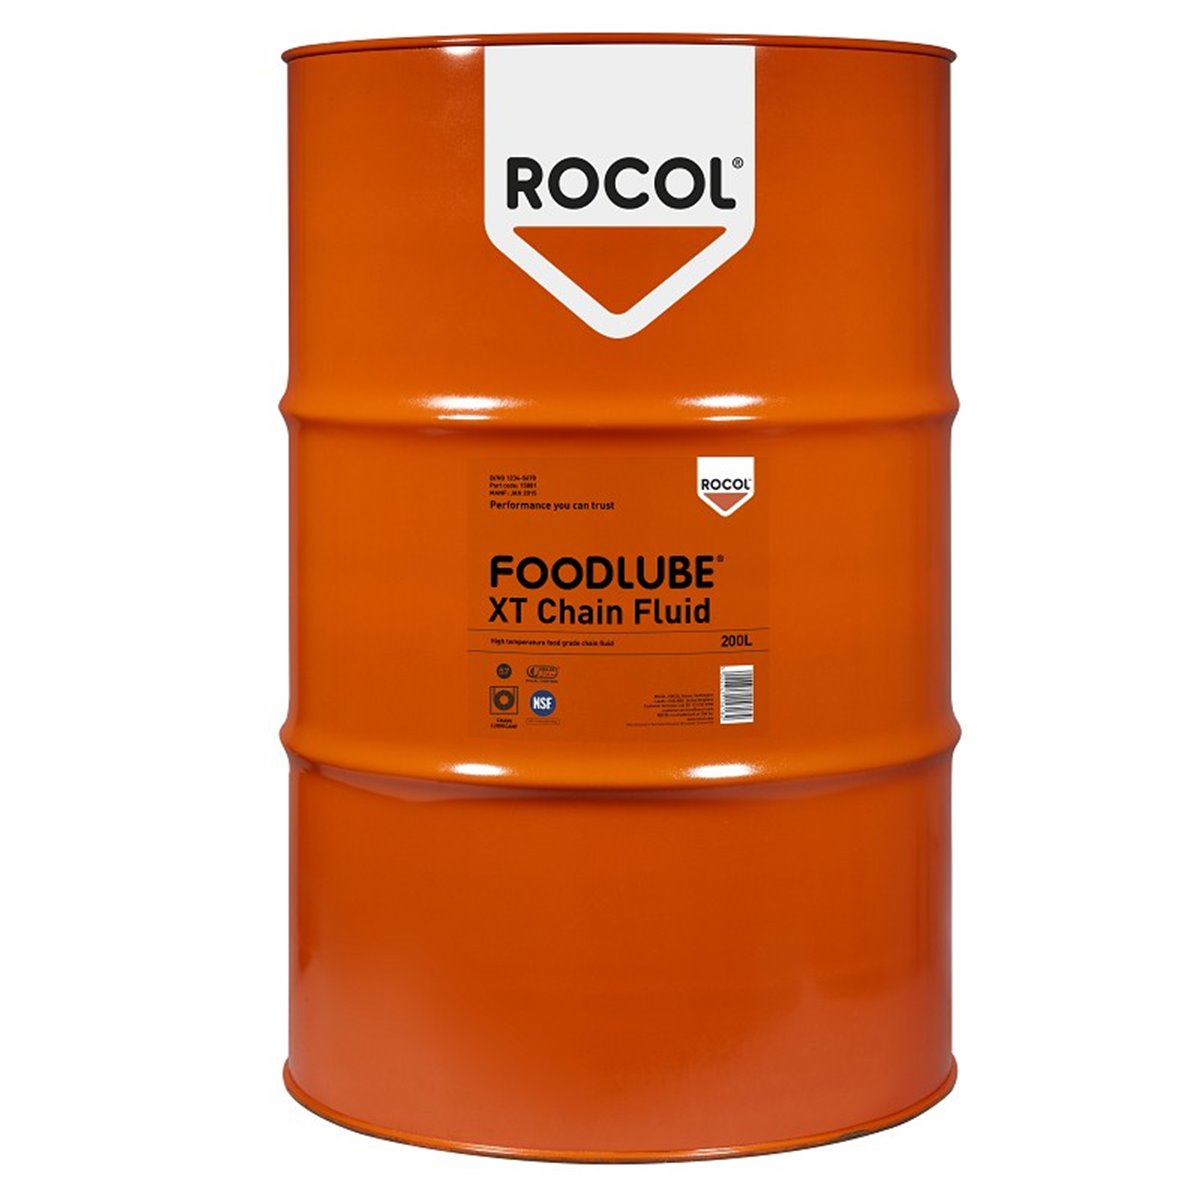 FOODLUBE XT Chain Fluid Rocol 200l RS15801